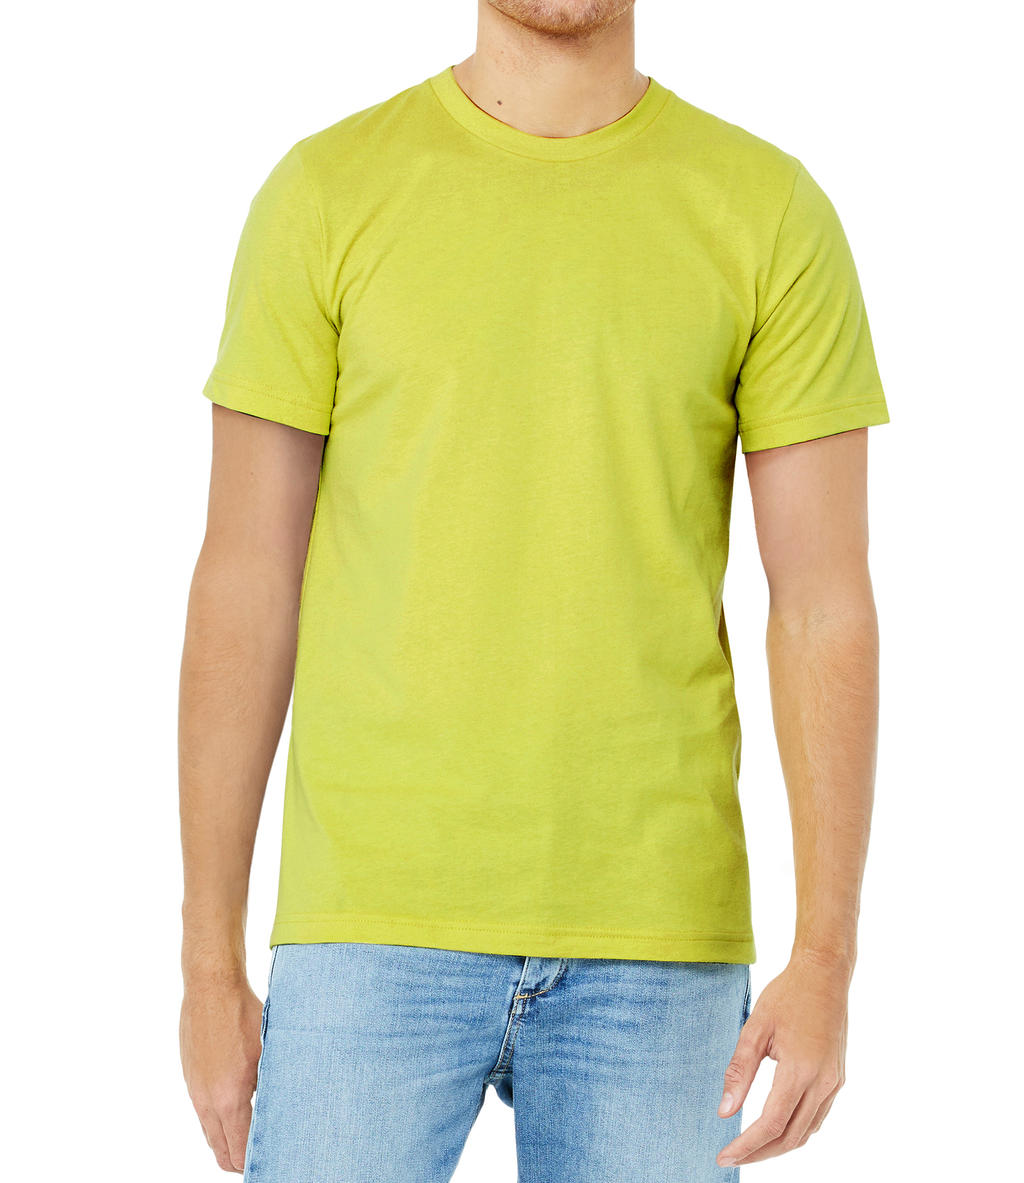 Tričko Bella Jersey - žluté-zelené, M